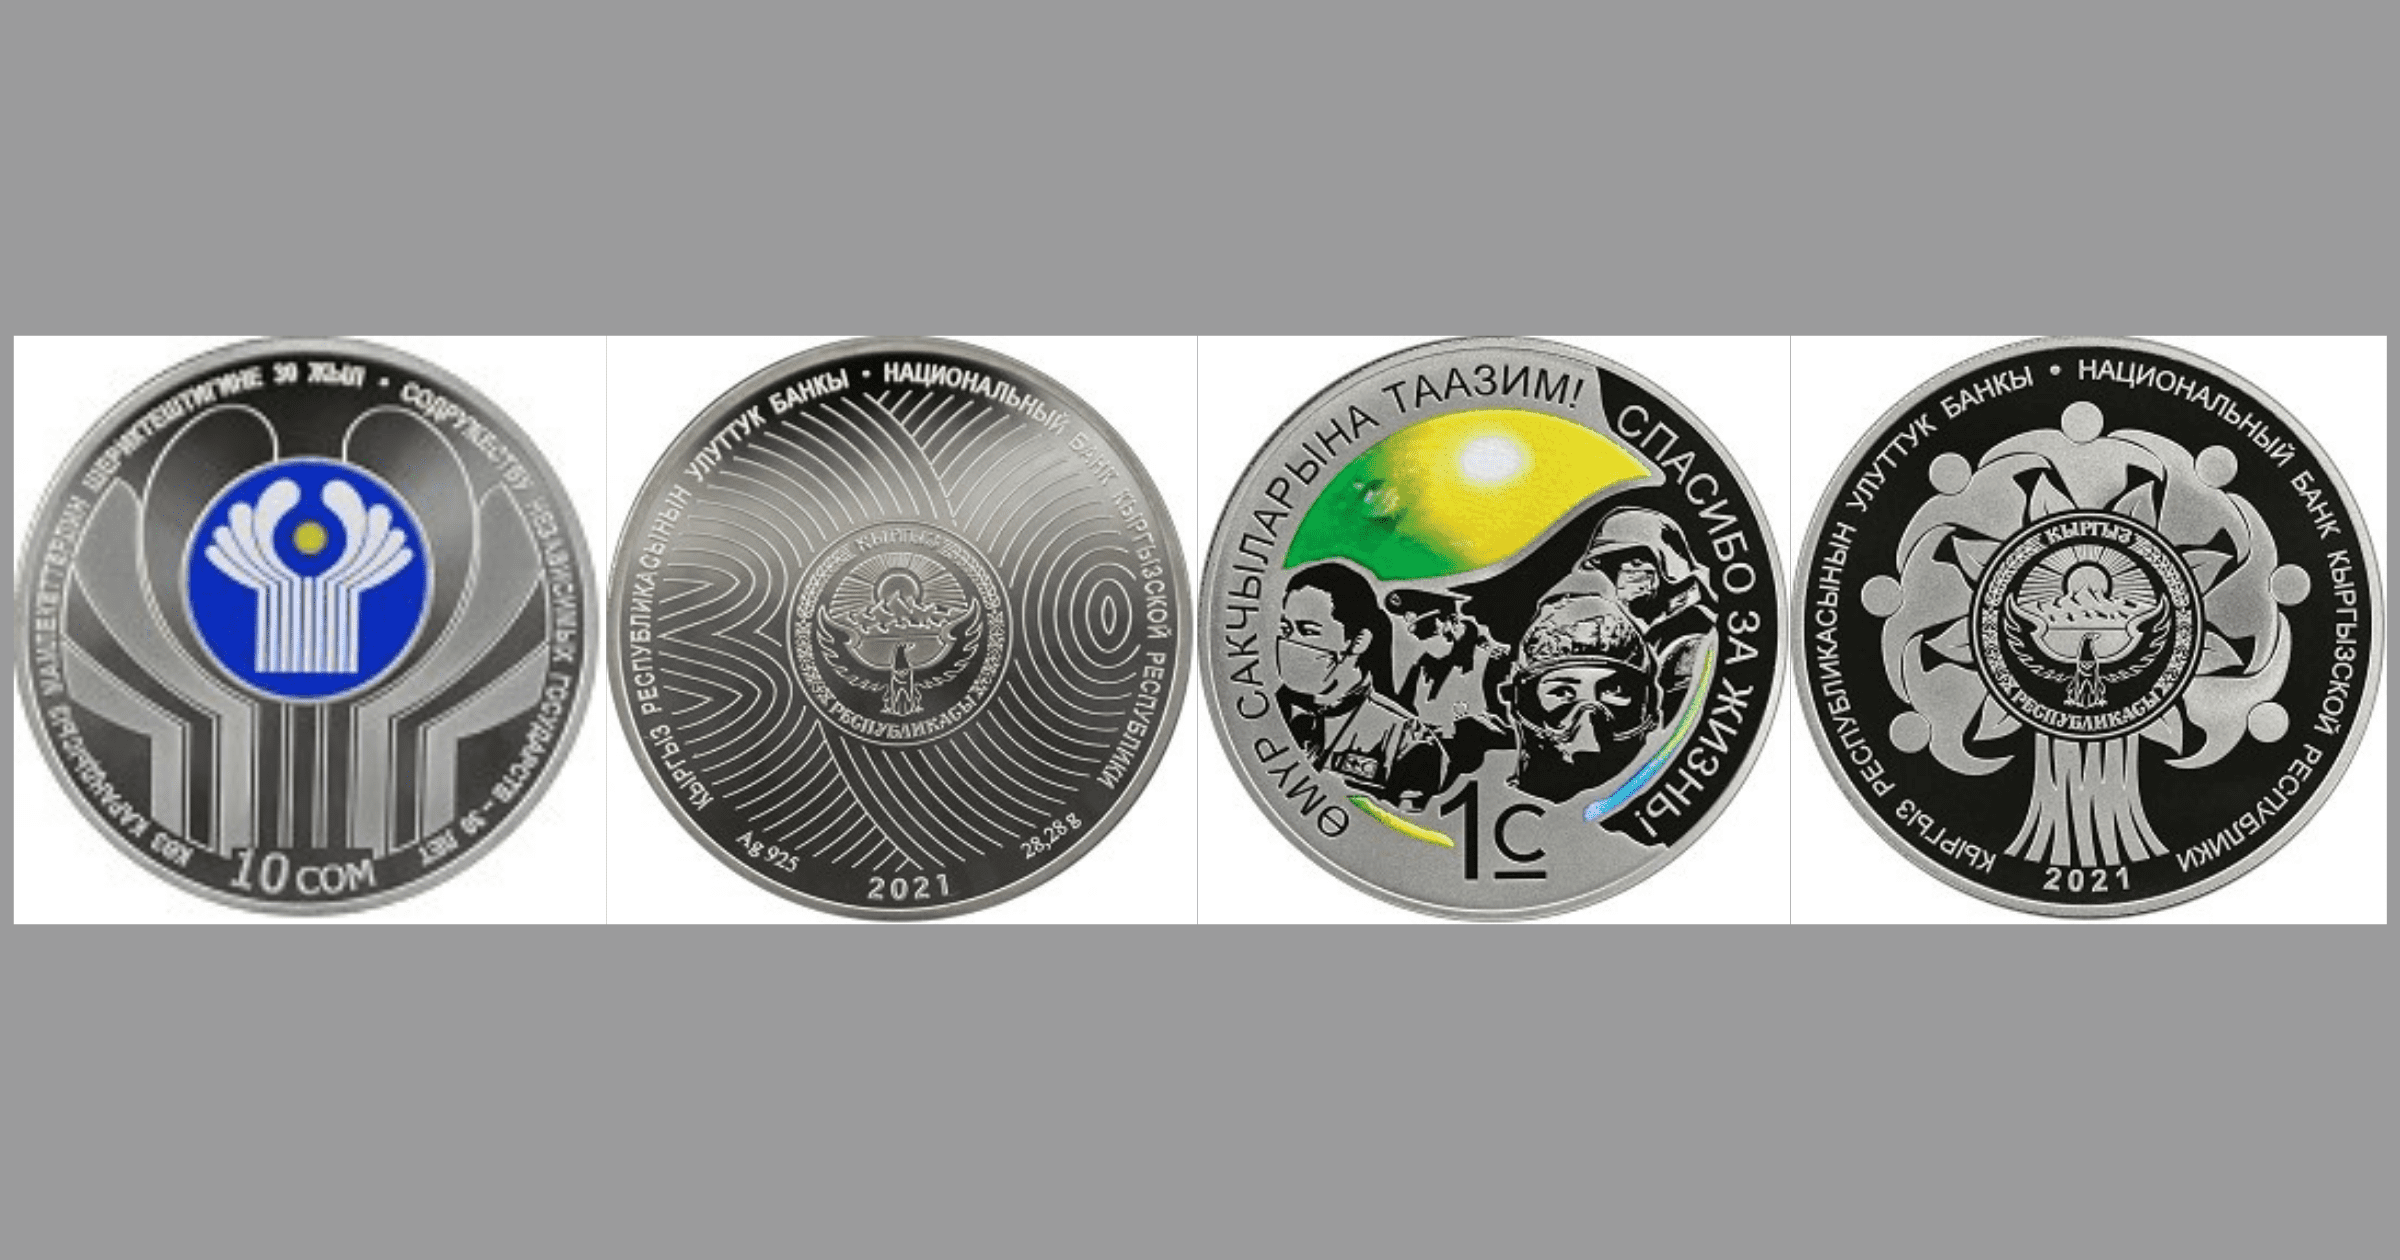 Нацбанк выпустил новые коллекционные монеты, посвященные 30-летию СНГ и борьбе с COVID-19